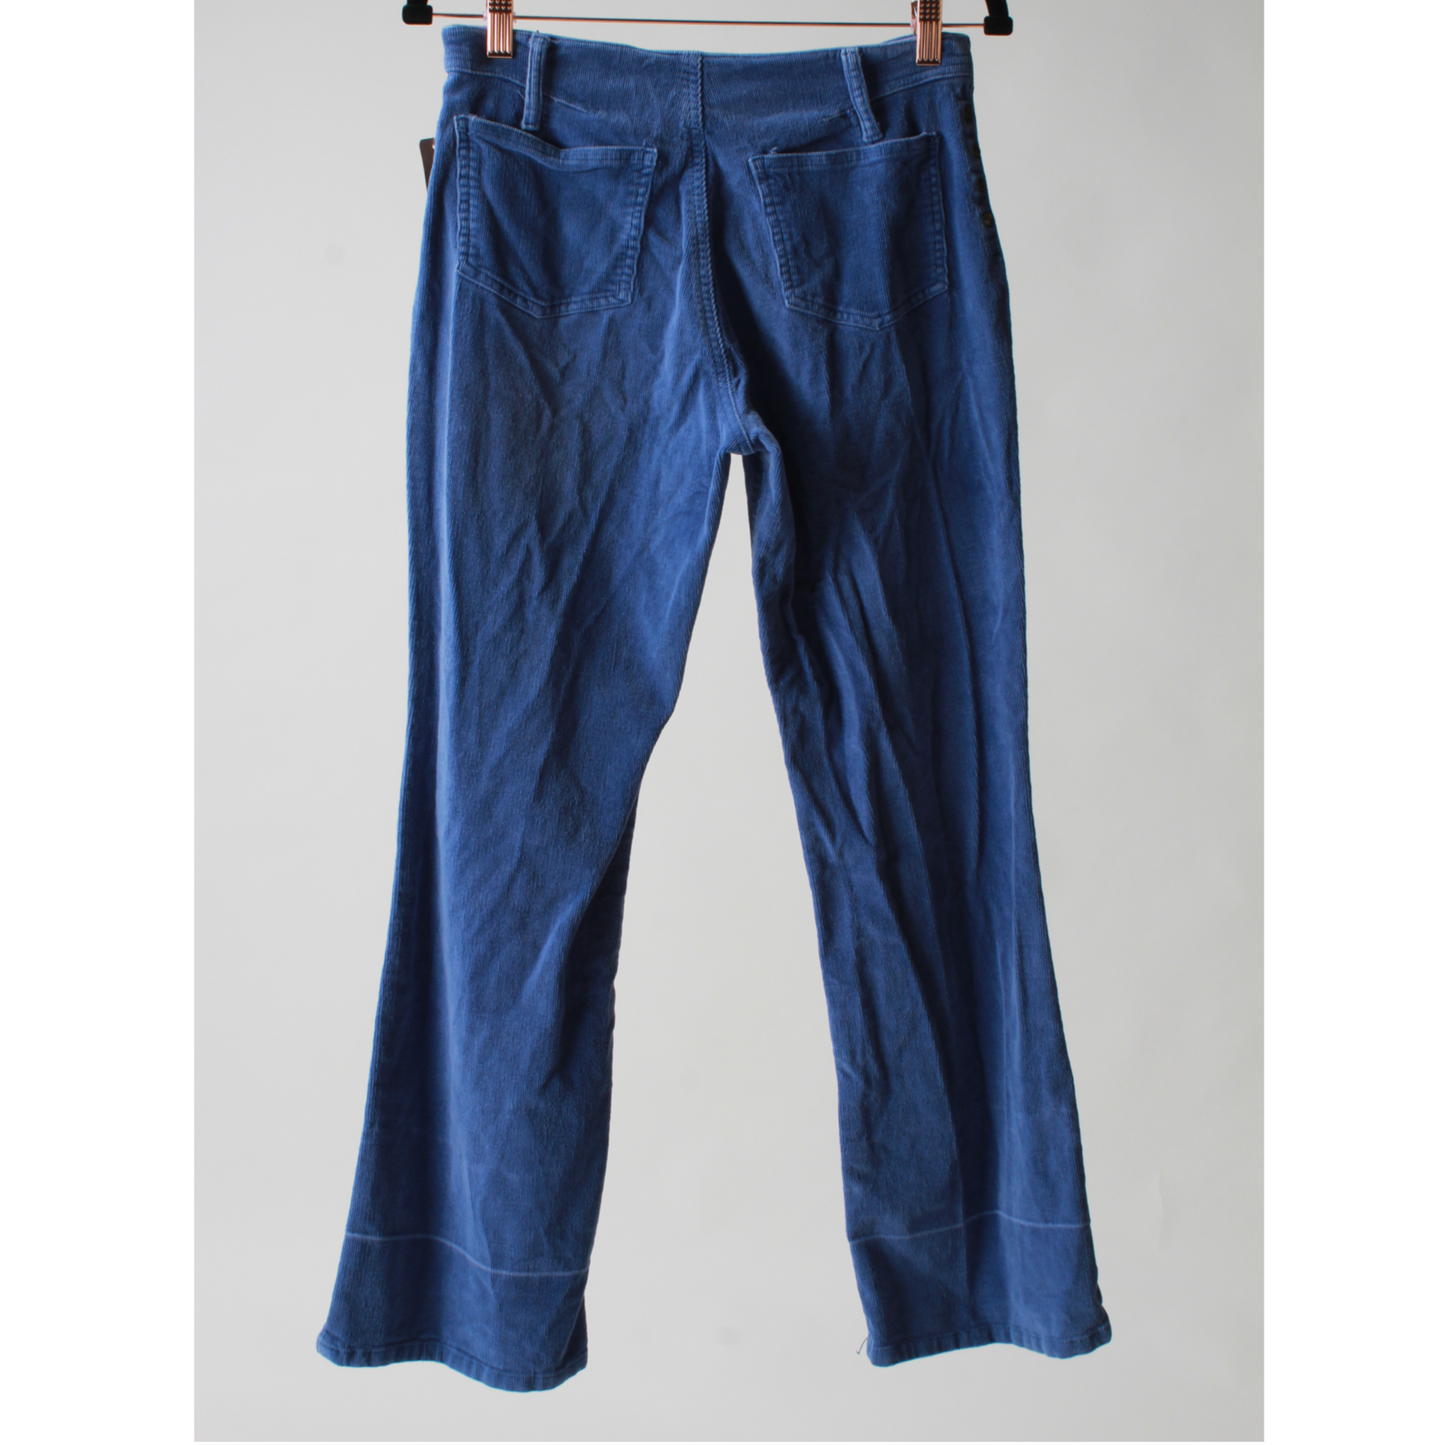 Purple Corduroy Pants (Lazer Jeans) (28")